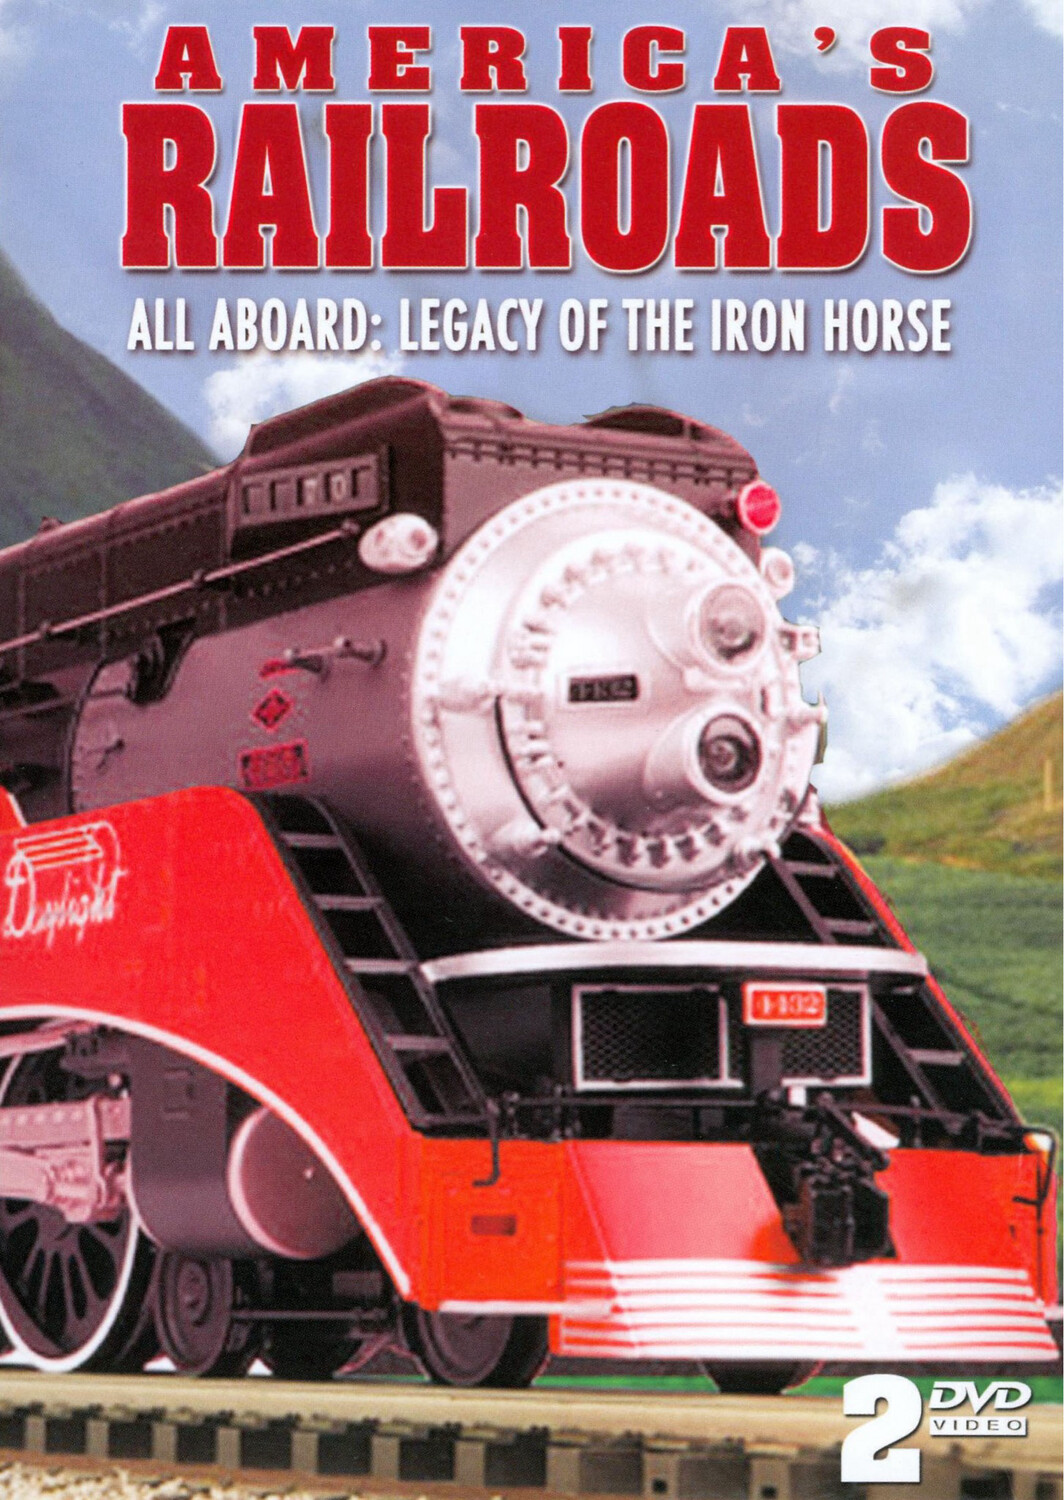 America's Railroads: The Steam Train Legacy